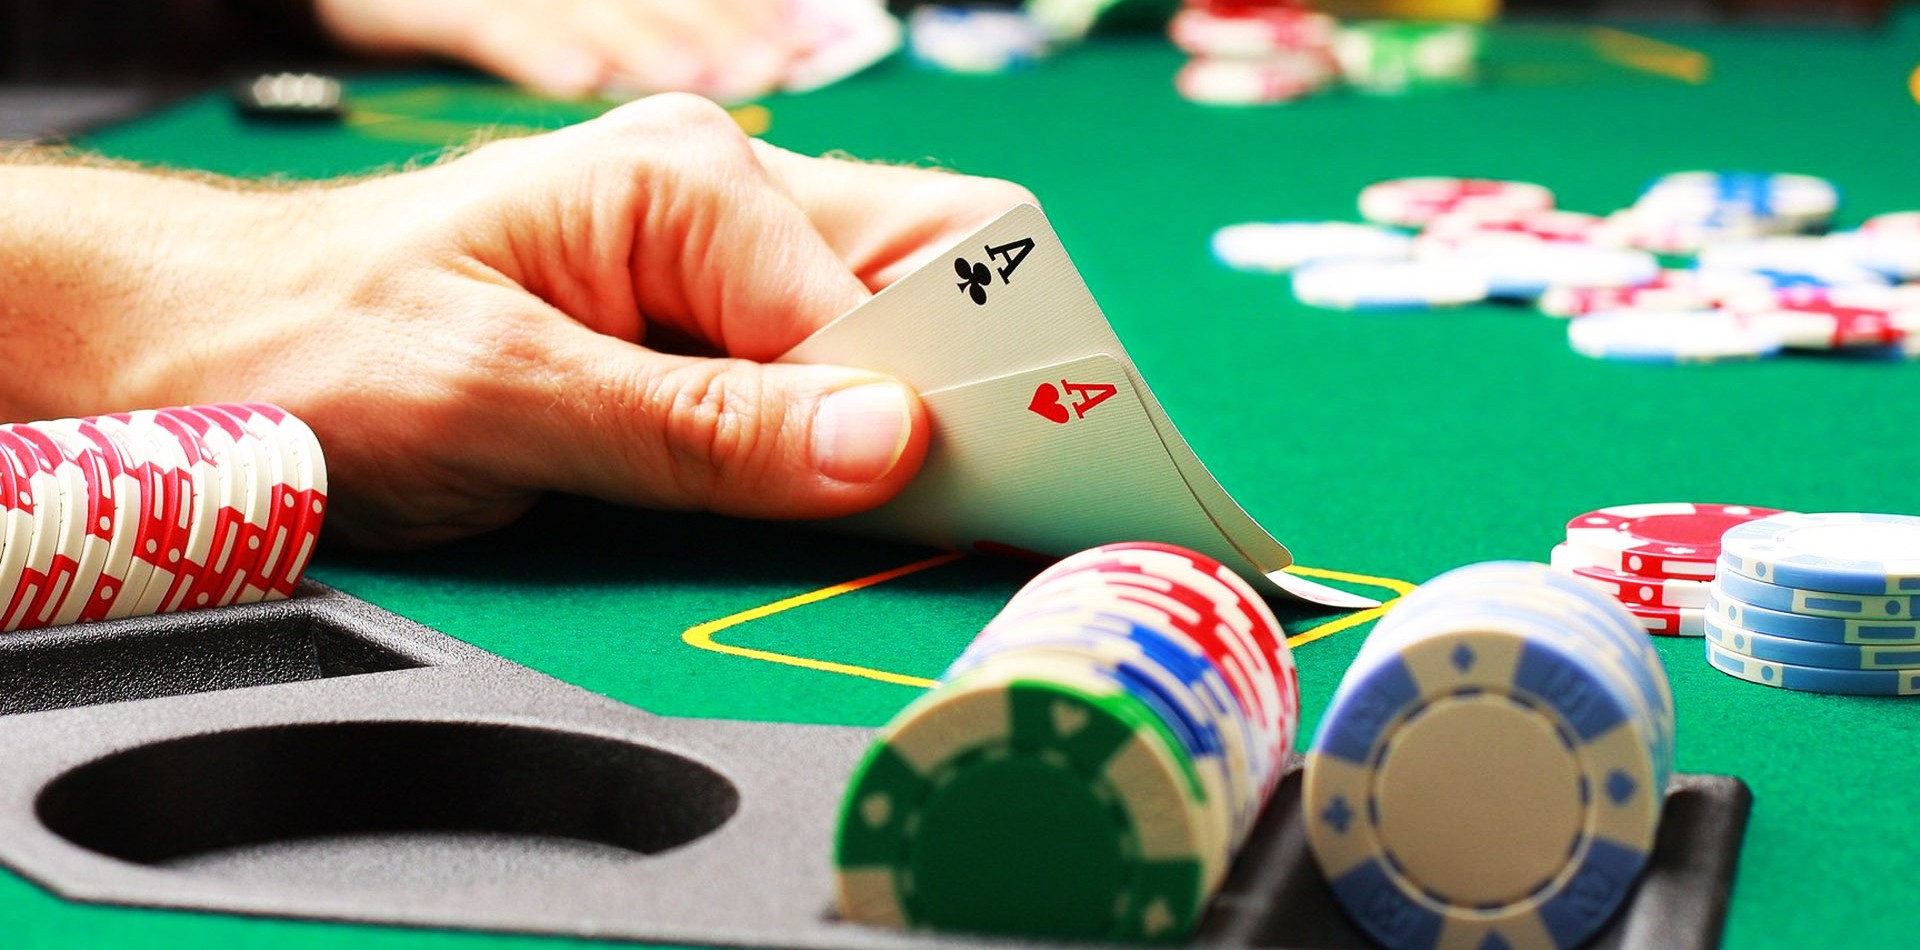 Hướng dẫn chơi bài Poker đơn giản nhất